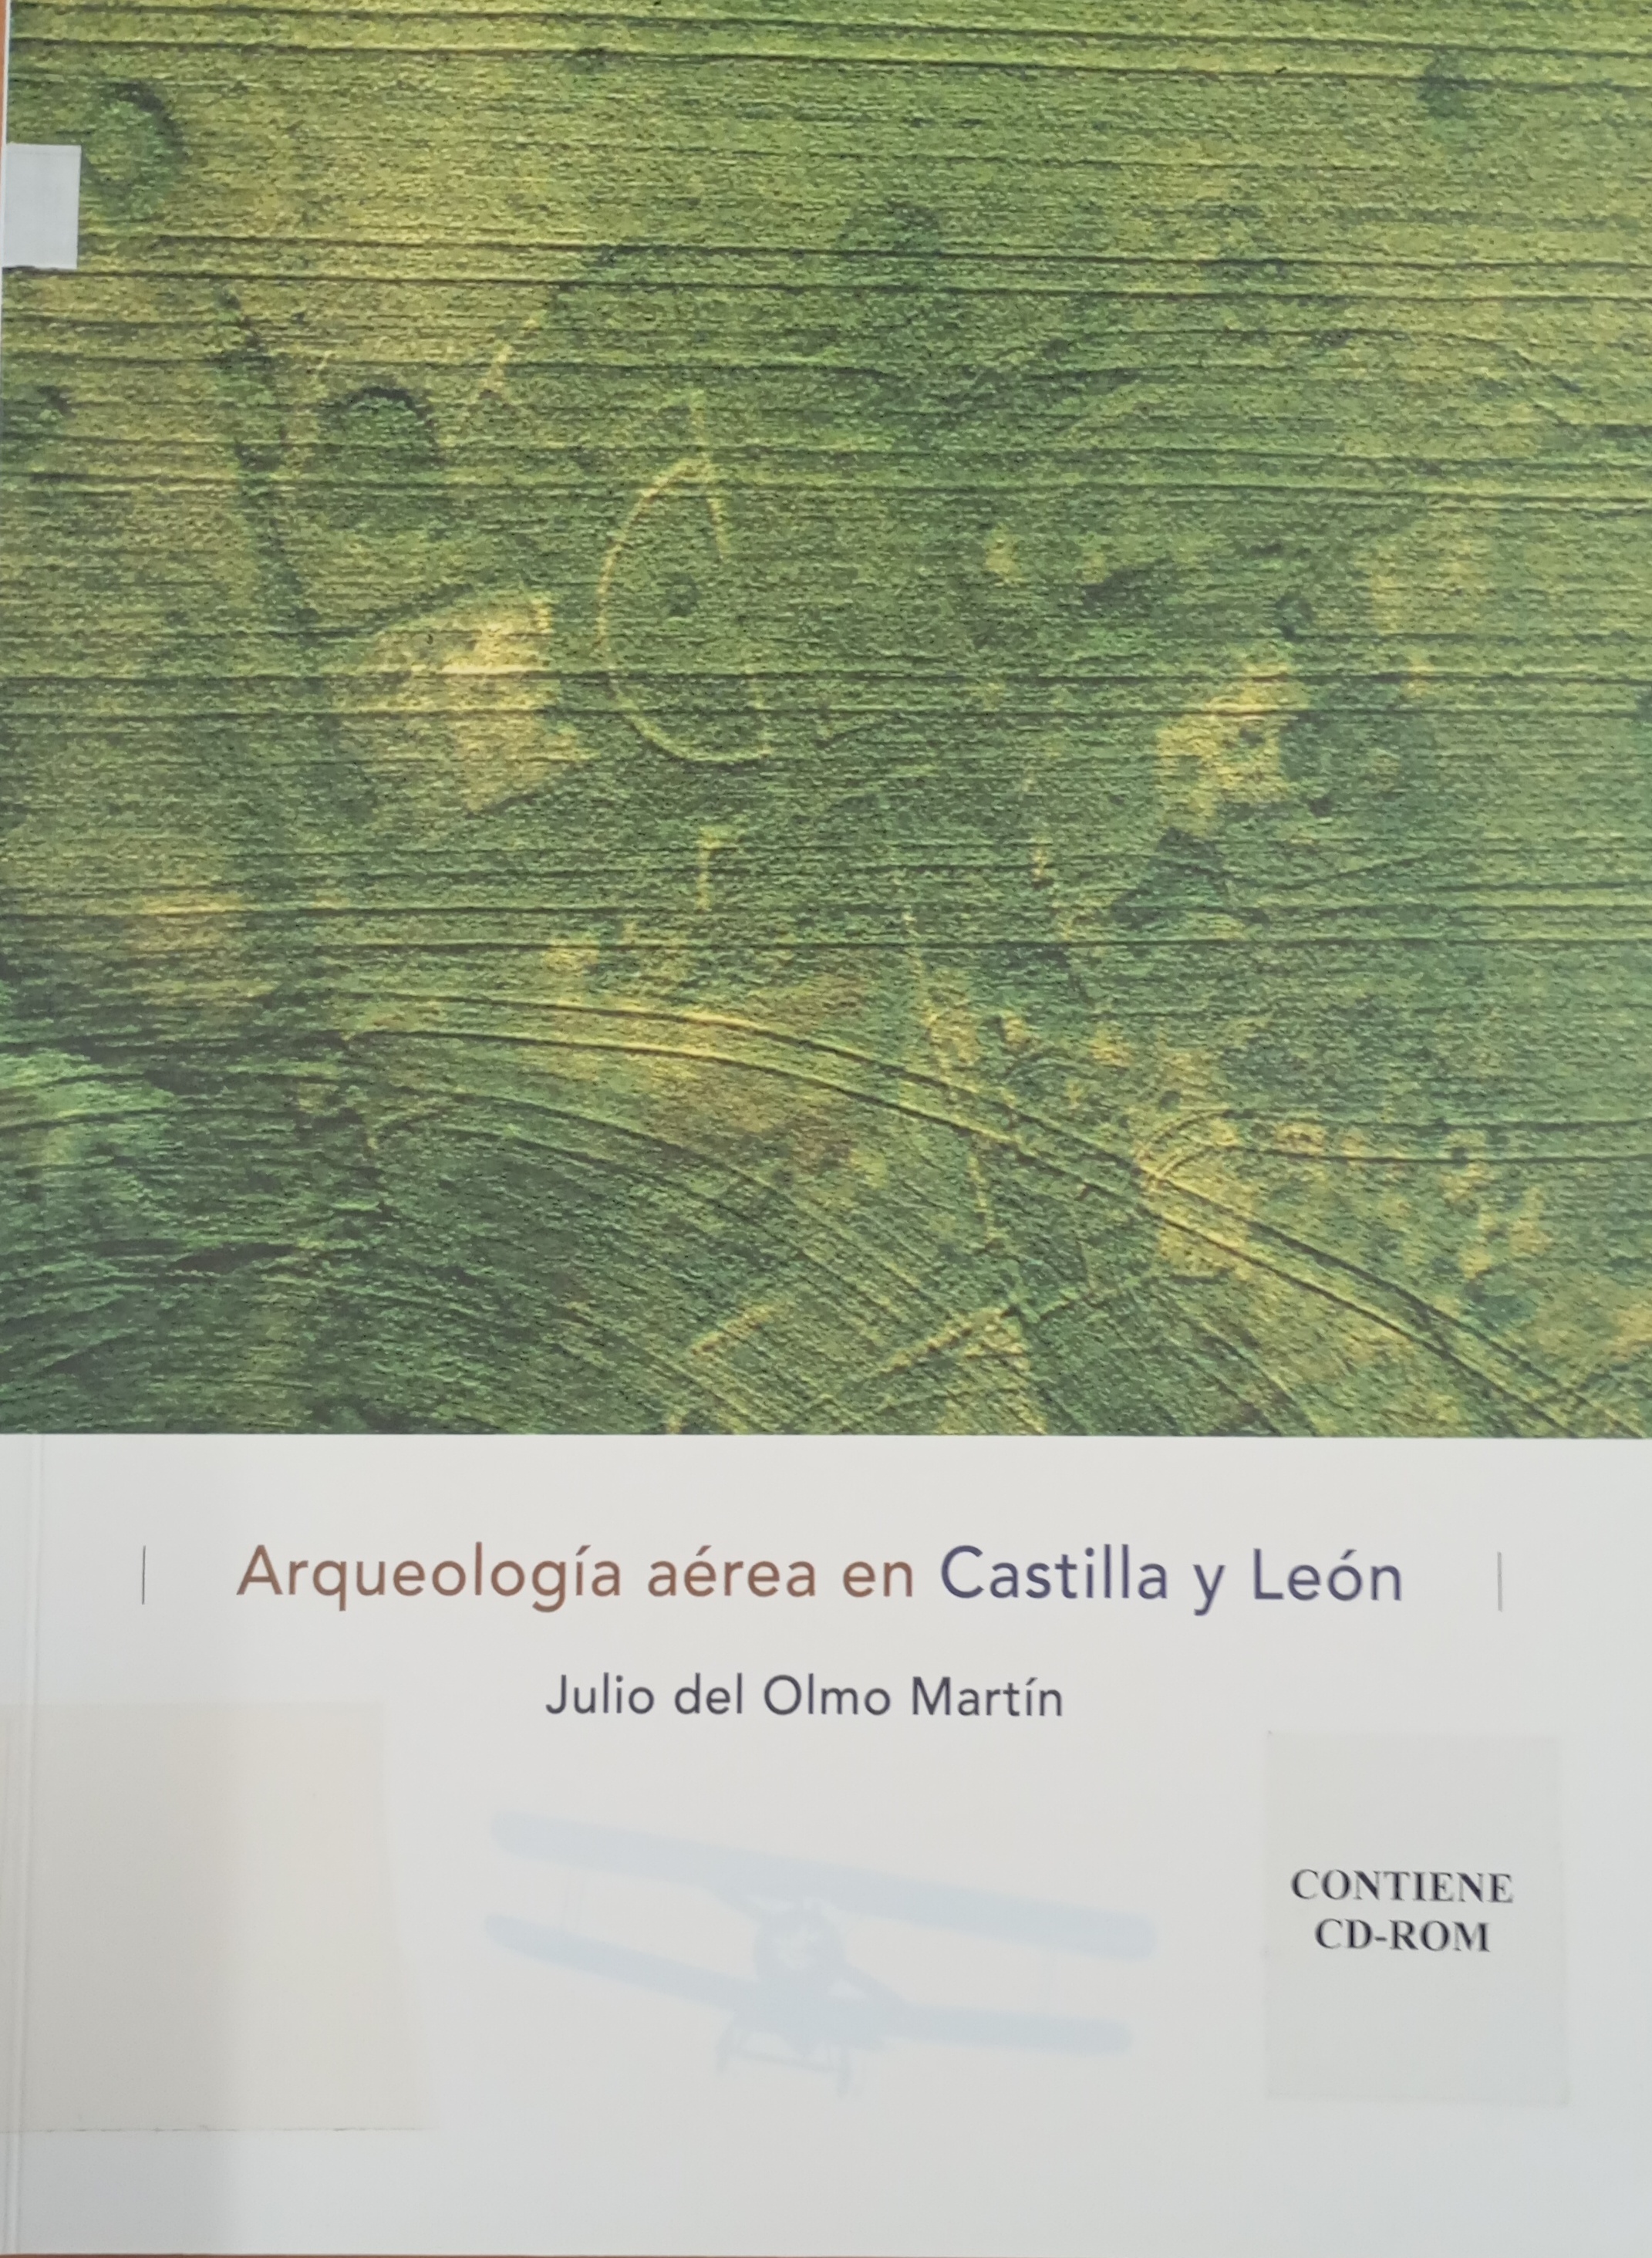 Imagen de portada del libro Arqueología aérea en Castilla y León